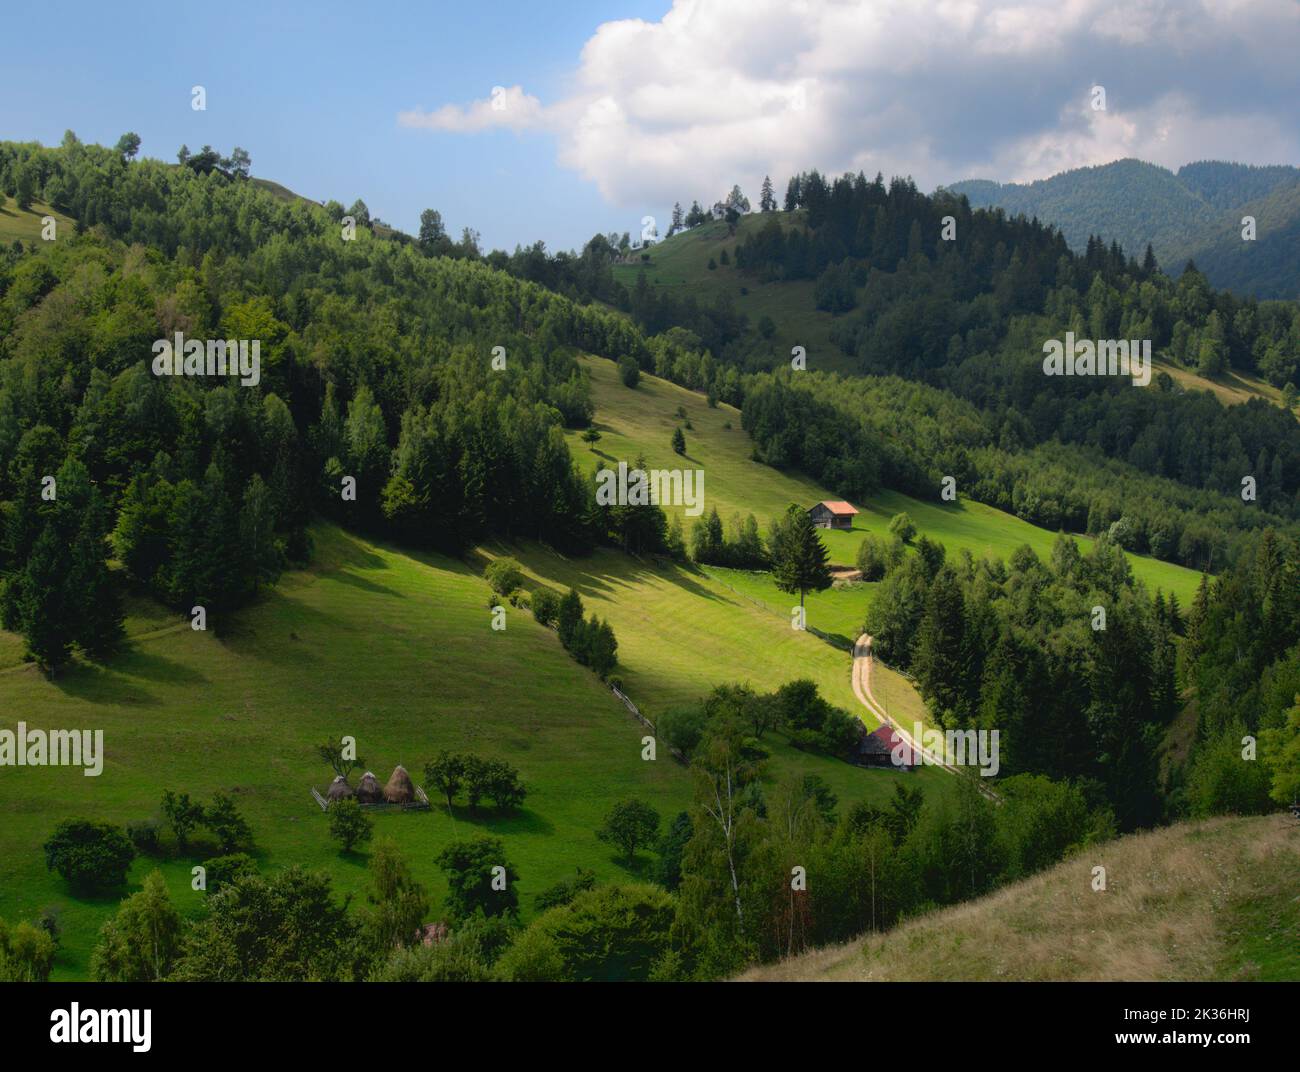 green mountain landscape, Carpathian mountains, Romania. Stock Photo